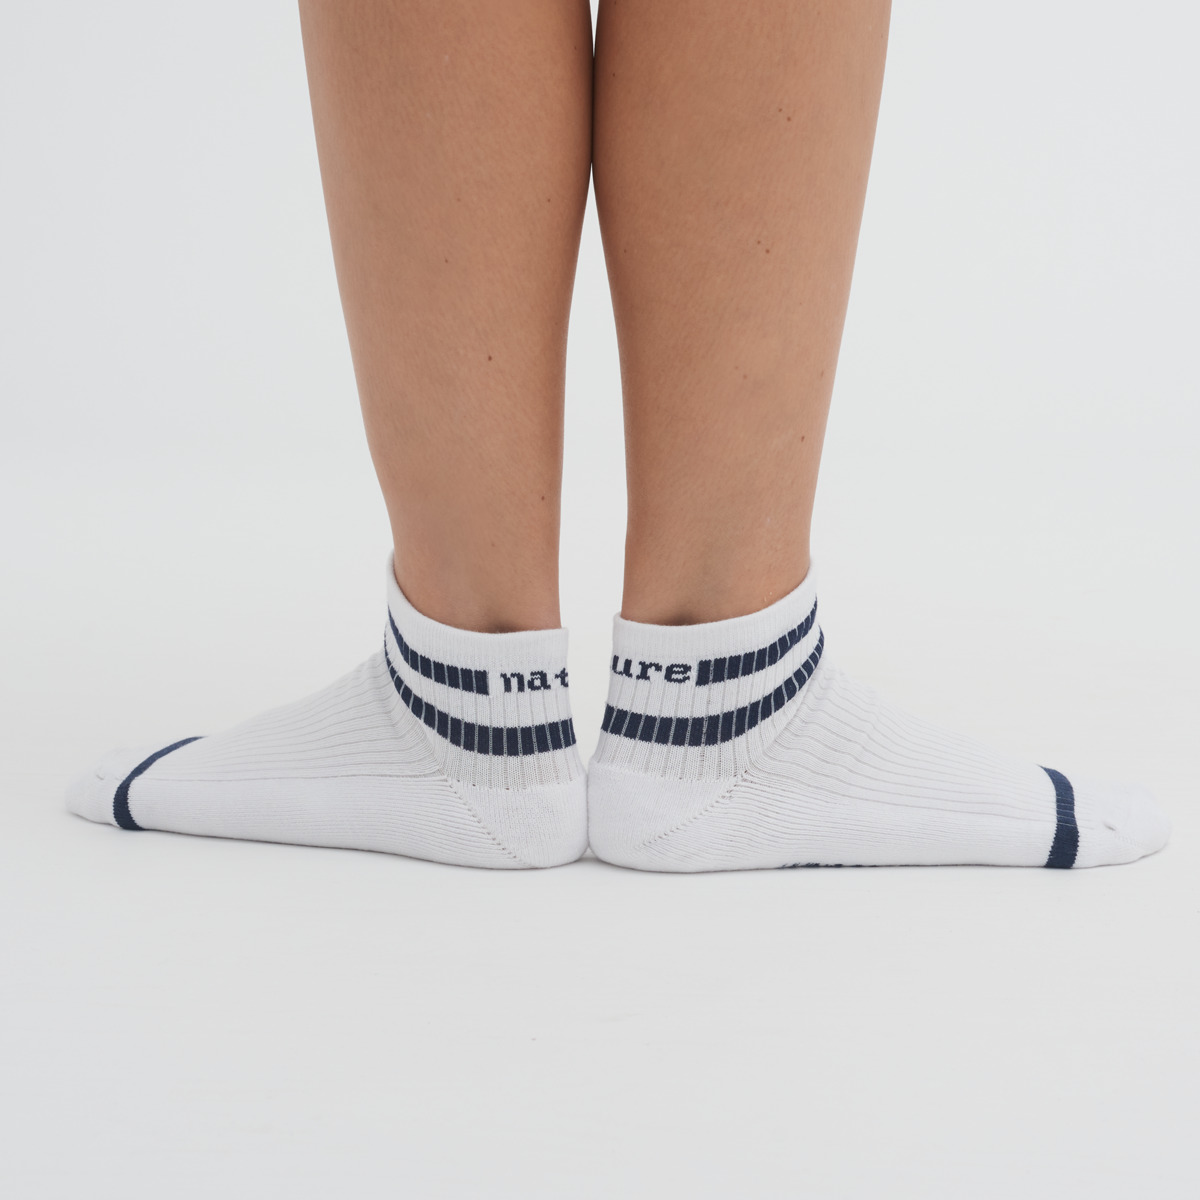 Mehrfarbig Unisex Hohe Sneaker-Socken, 2er Pack